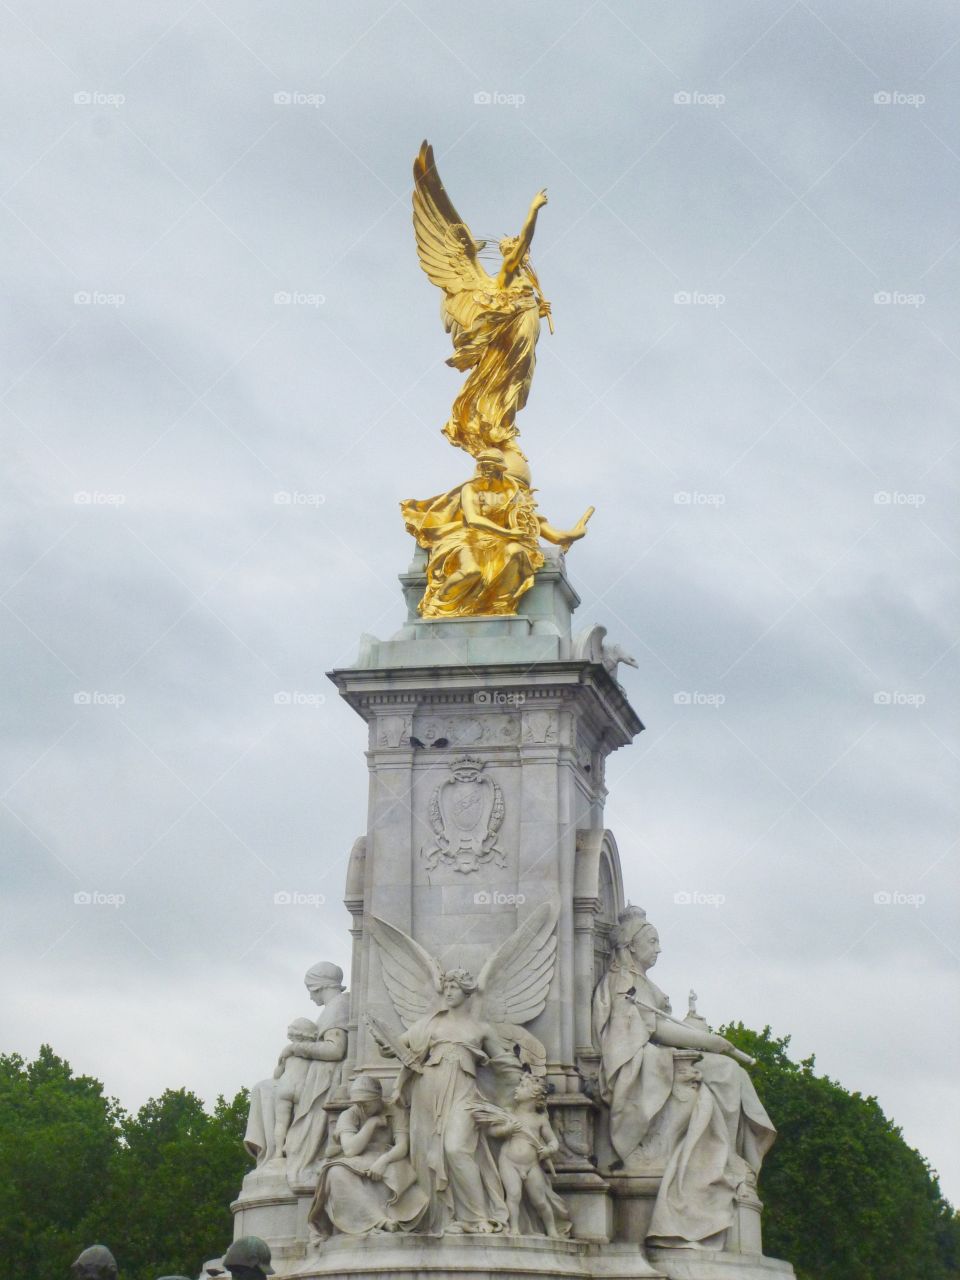 Buckingham palace monument